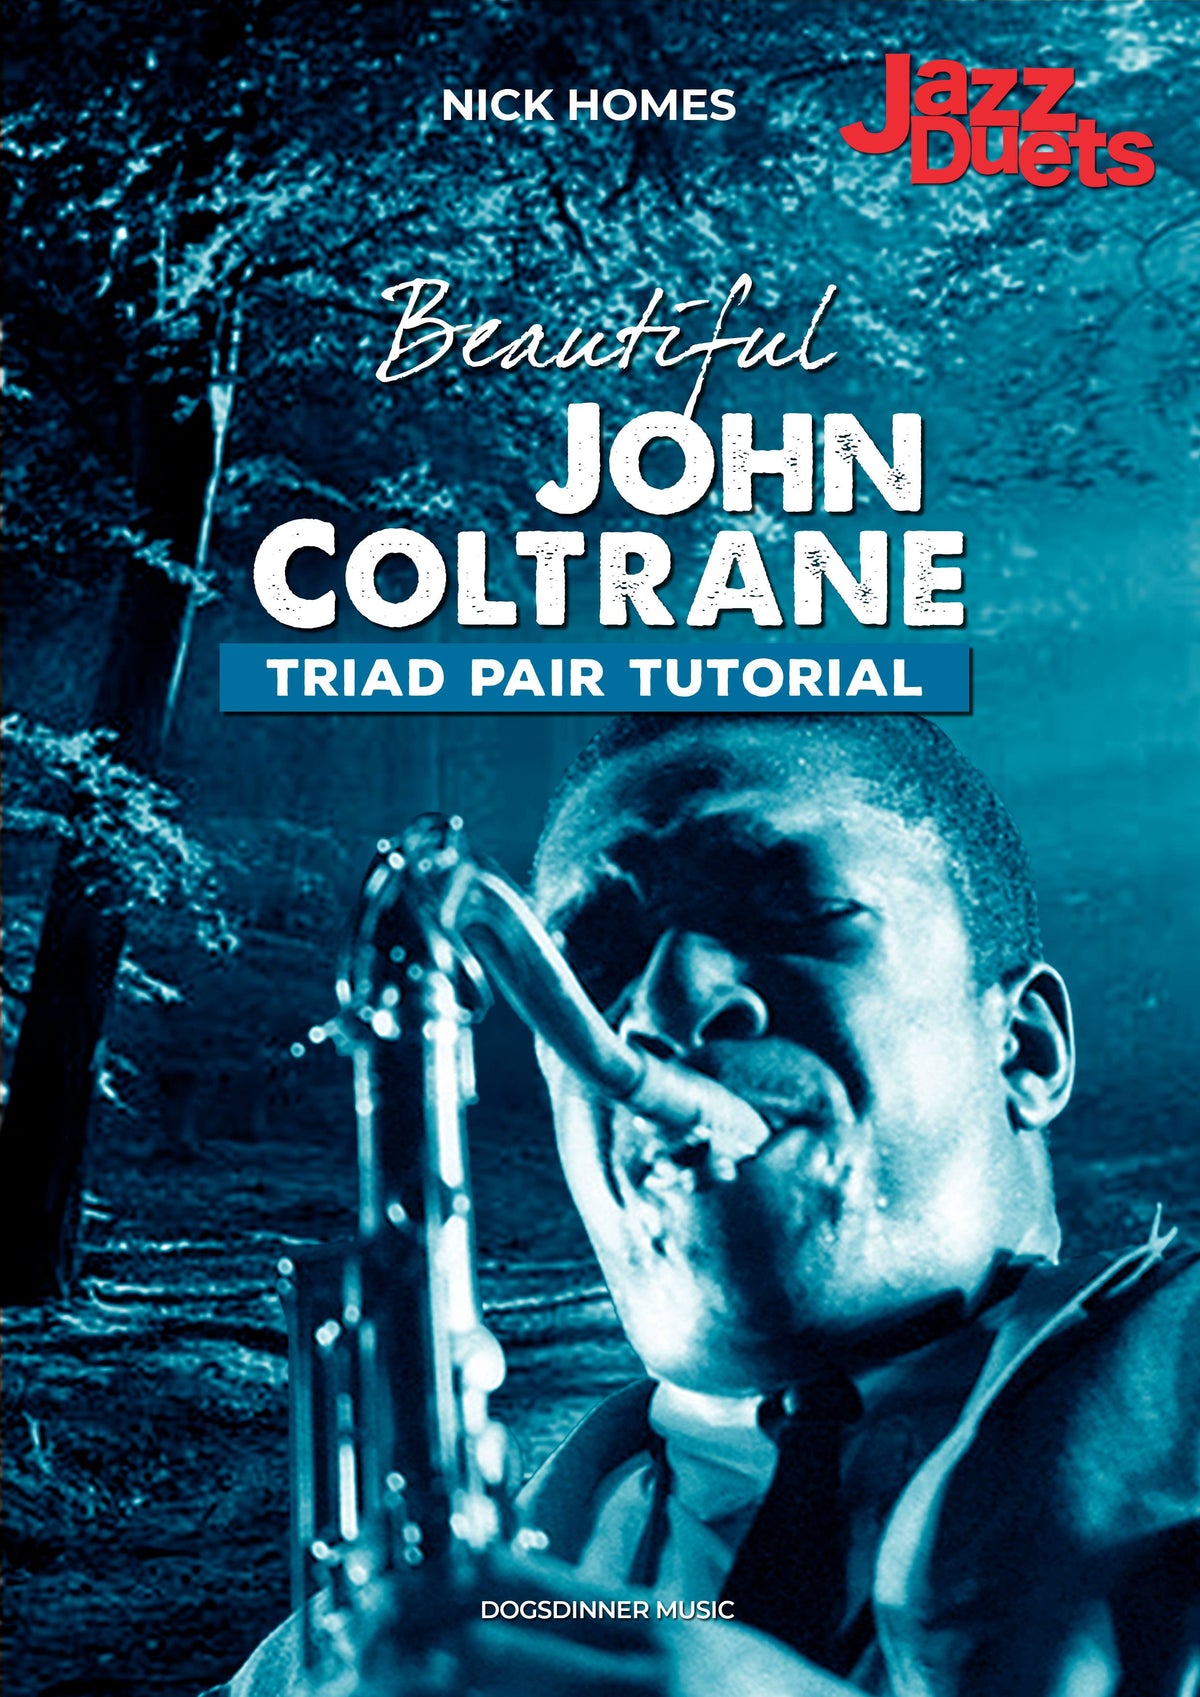 John Coltrane Triad pair tutorial